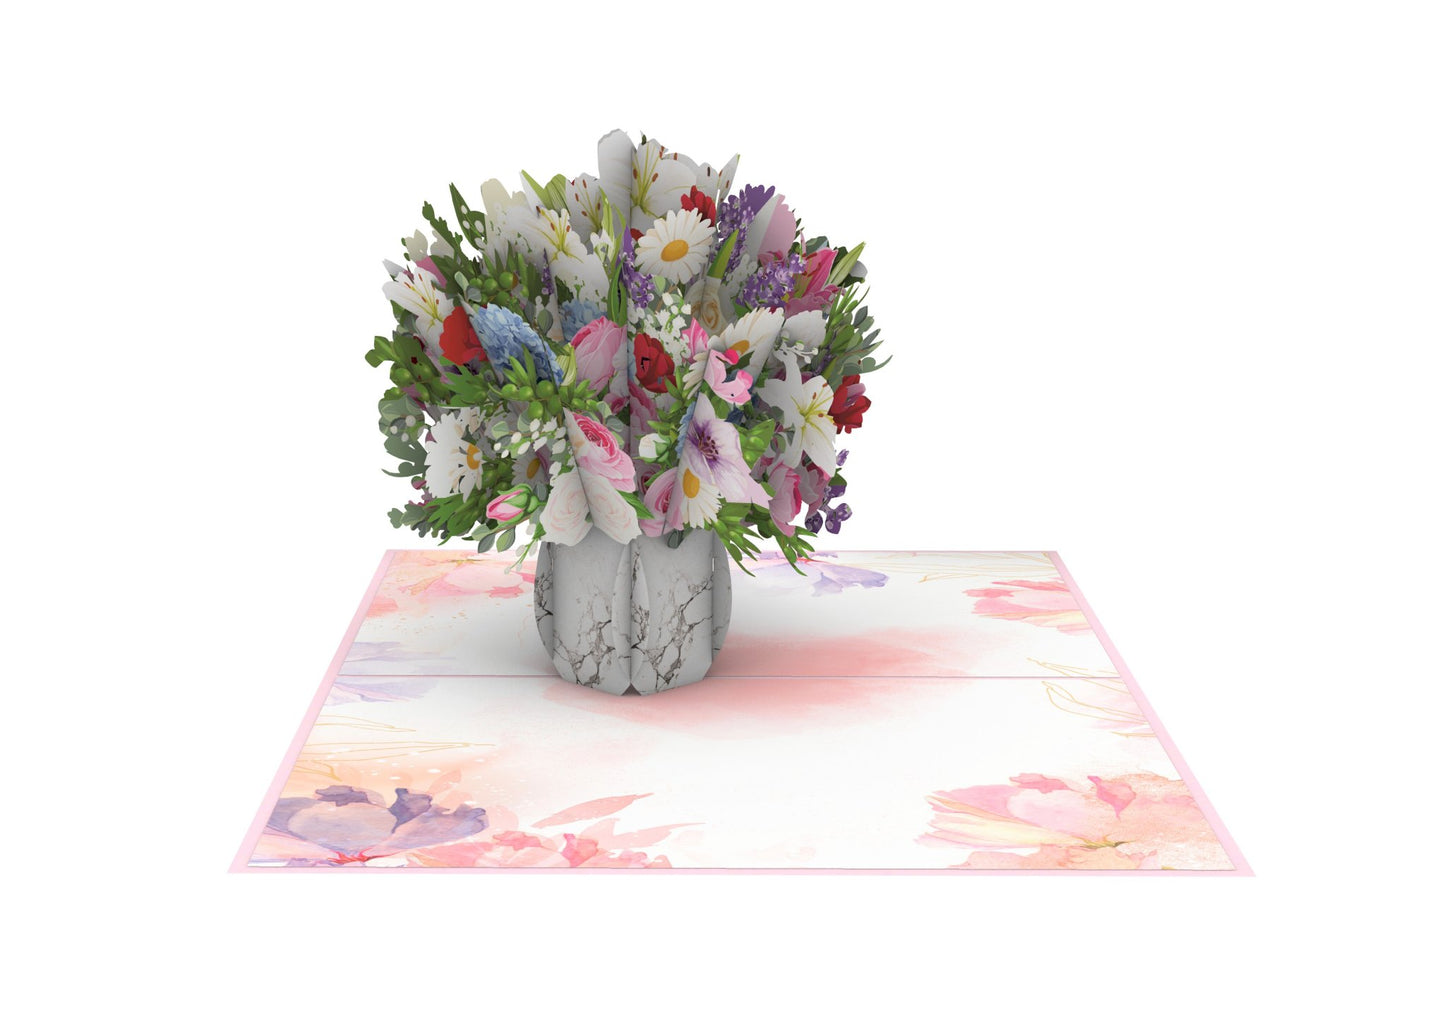 Floral Vase Pop-Up Card